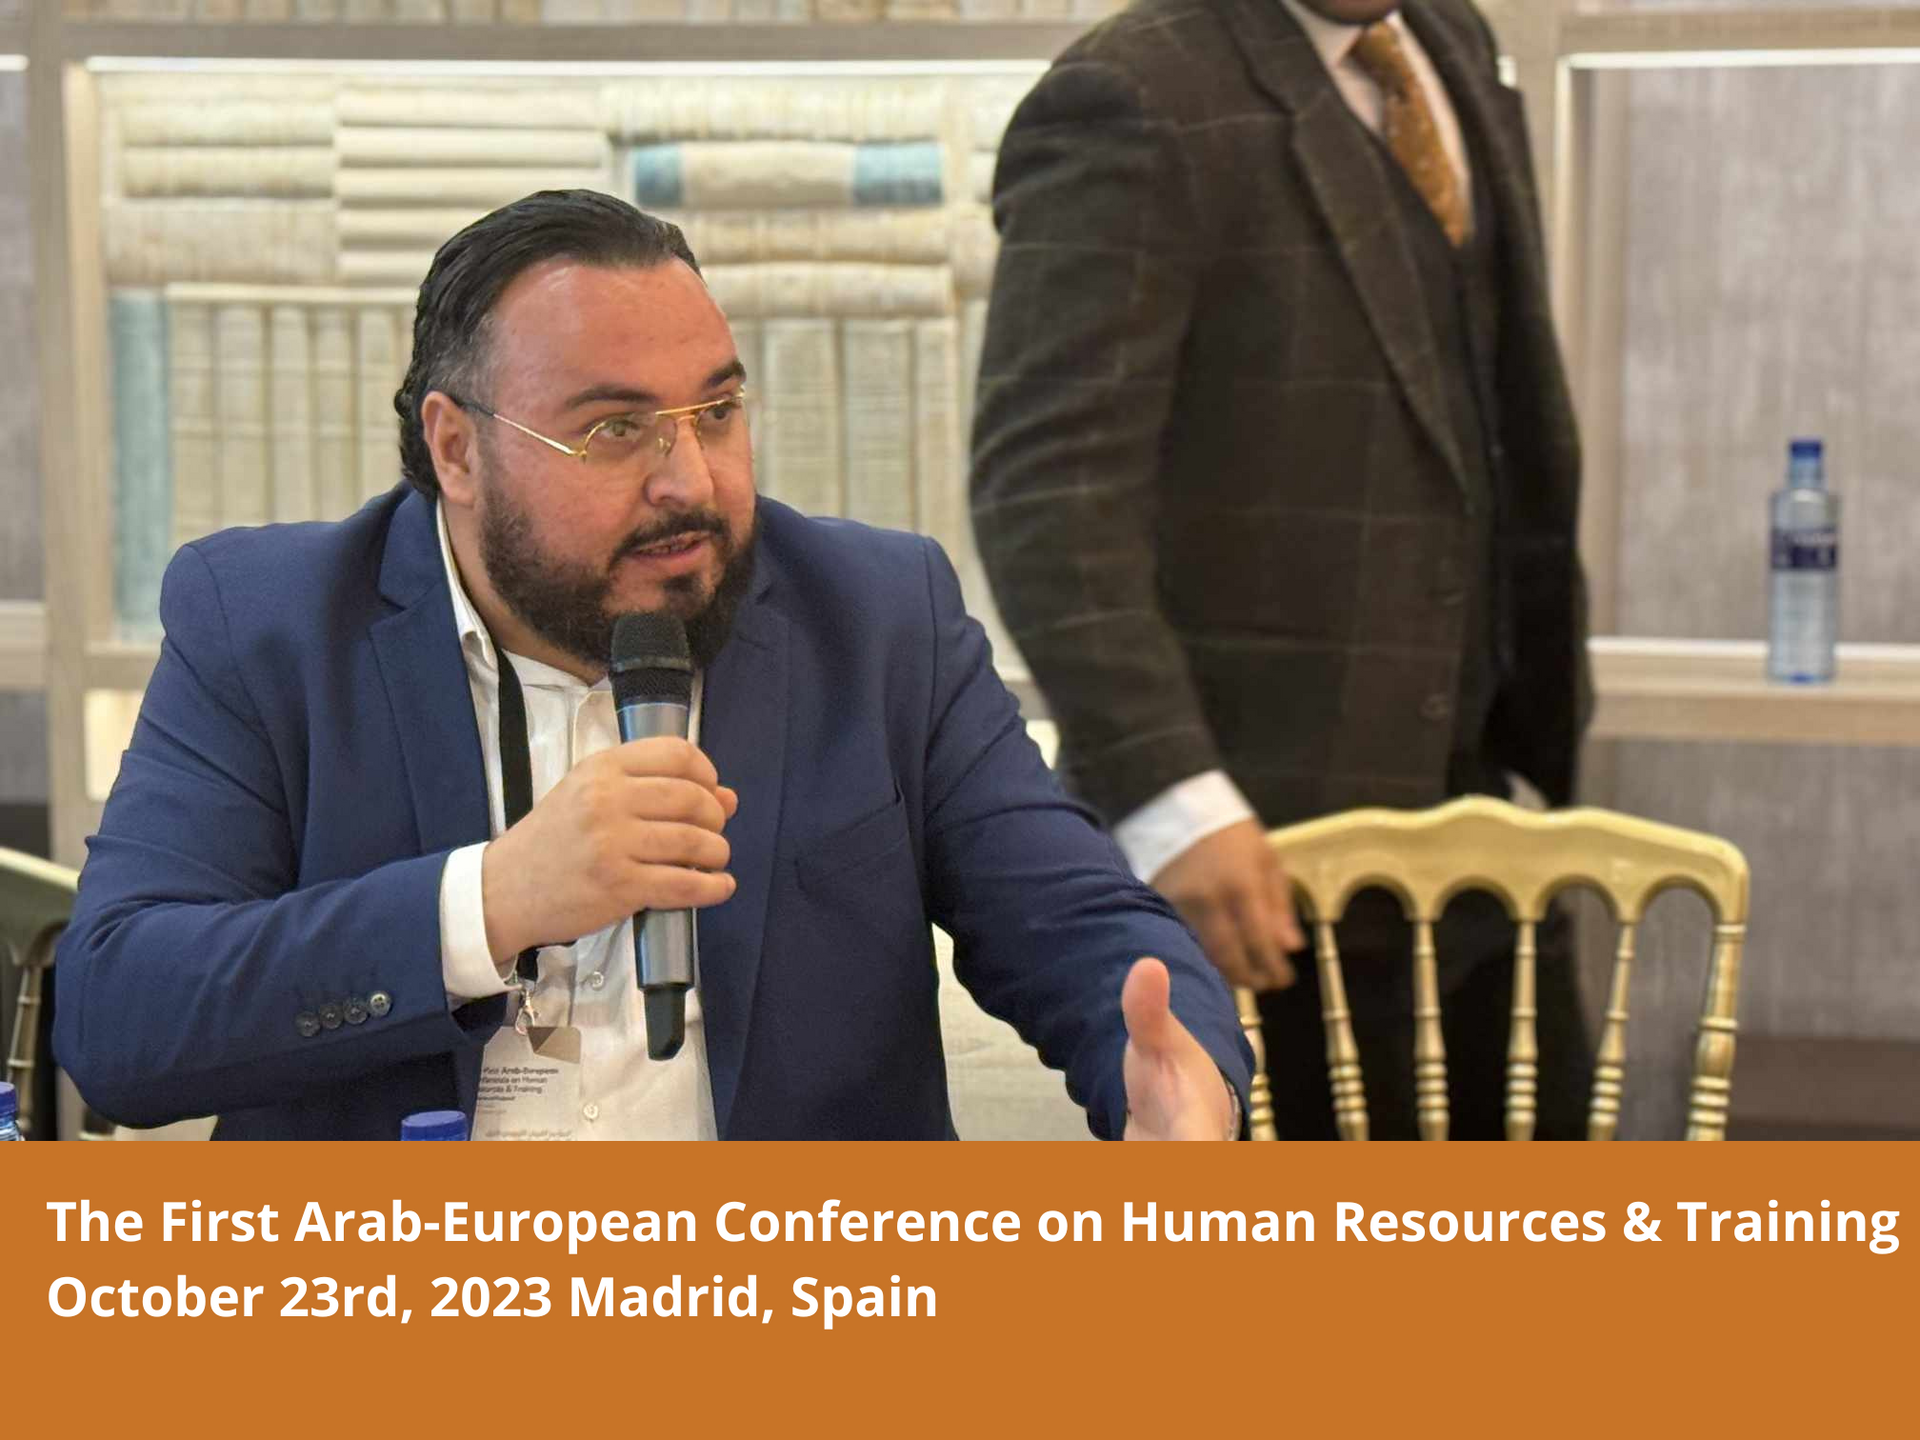 El Primer Congreso Árabe Europeo de Recursos Humanos y Formación. Madrid - Octubre 2023. المؤتمر العربي الأوروبي الأول للموارد البشرية والتدريب في مدريد - The First Arab-European Conference on Human Resources & Training